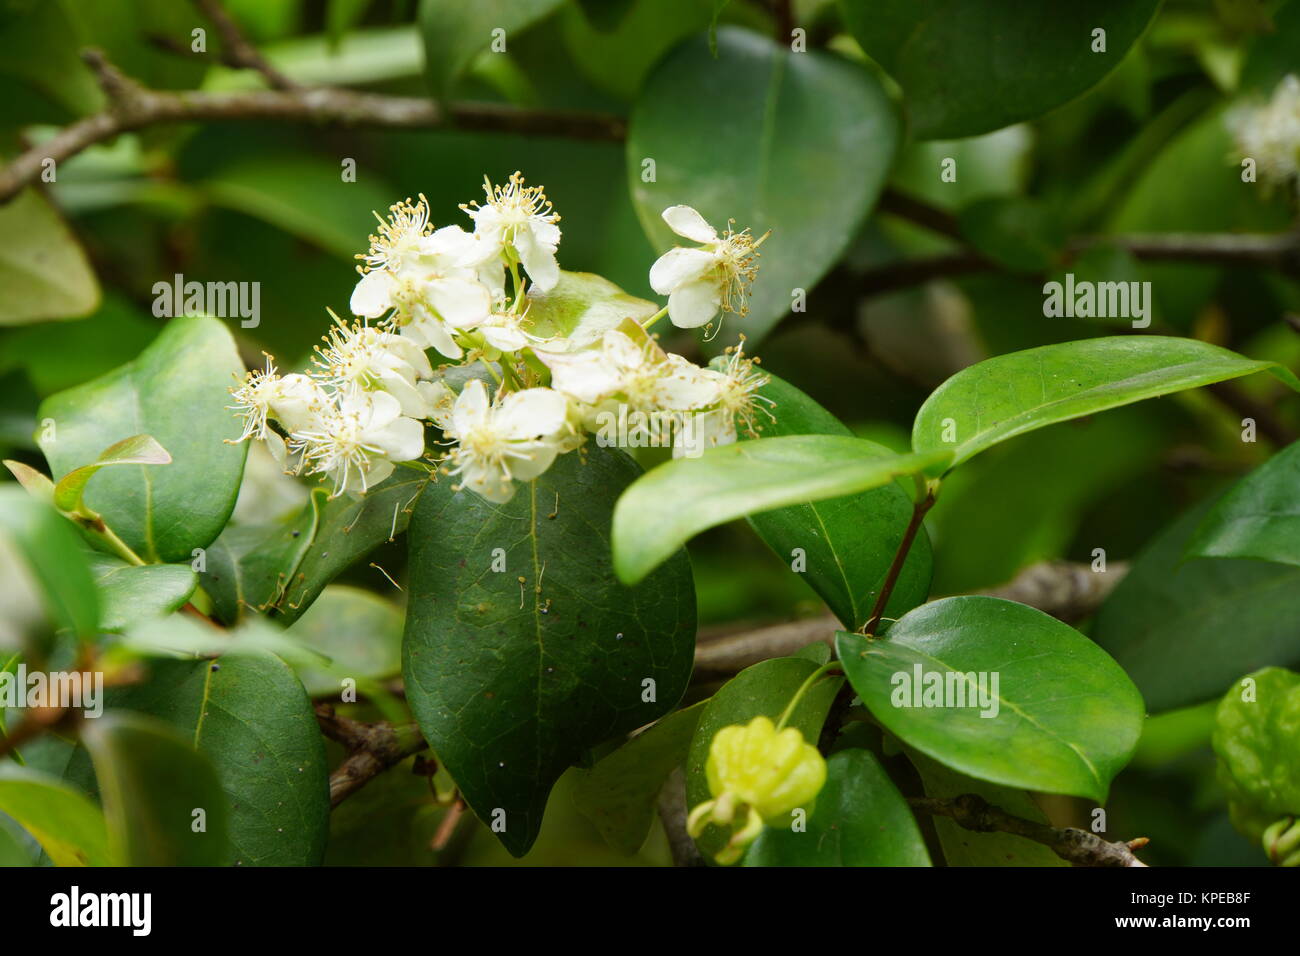 surinam cherry (eugenia uniflora),also known as pitanga or eugenia Stock Photo